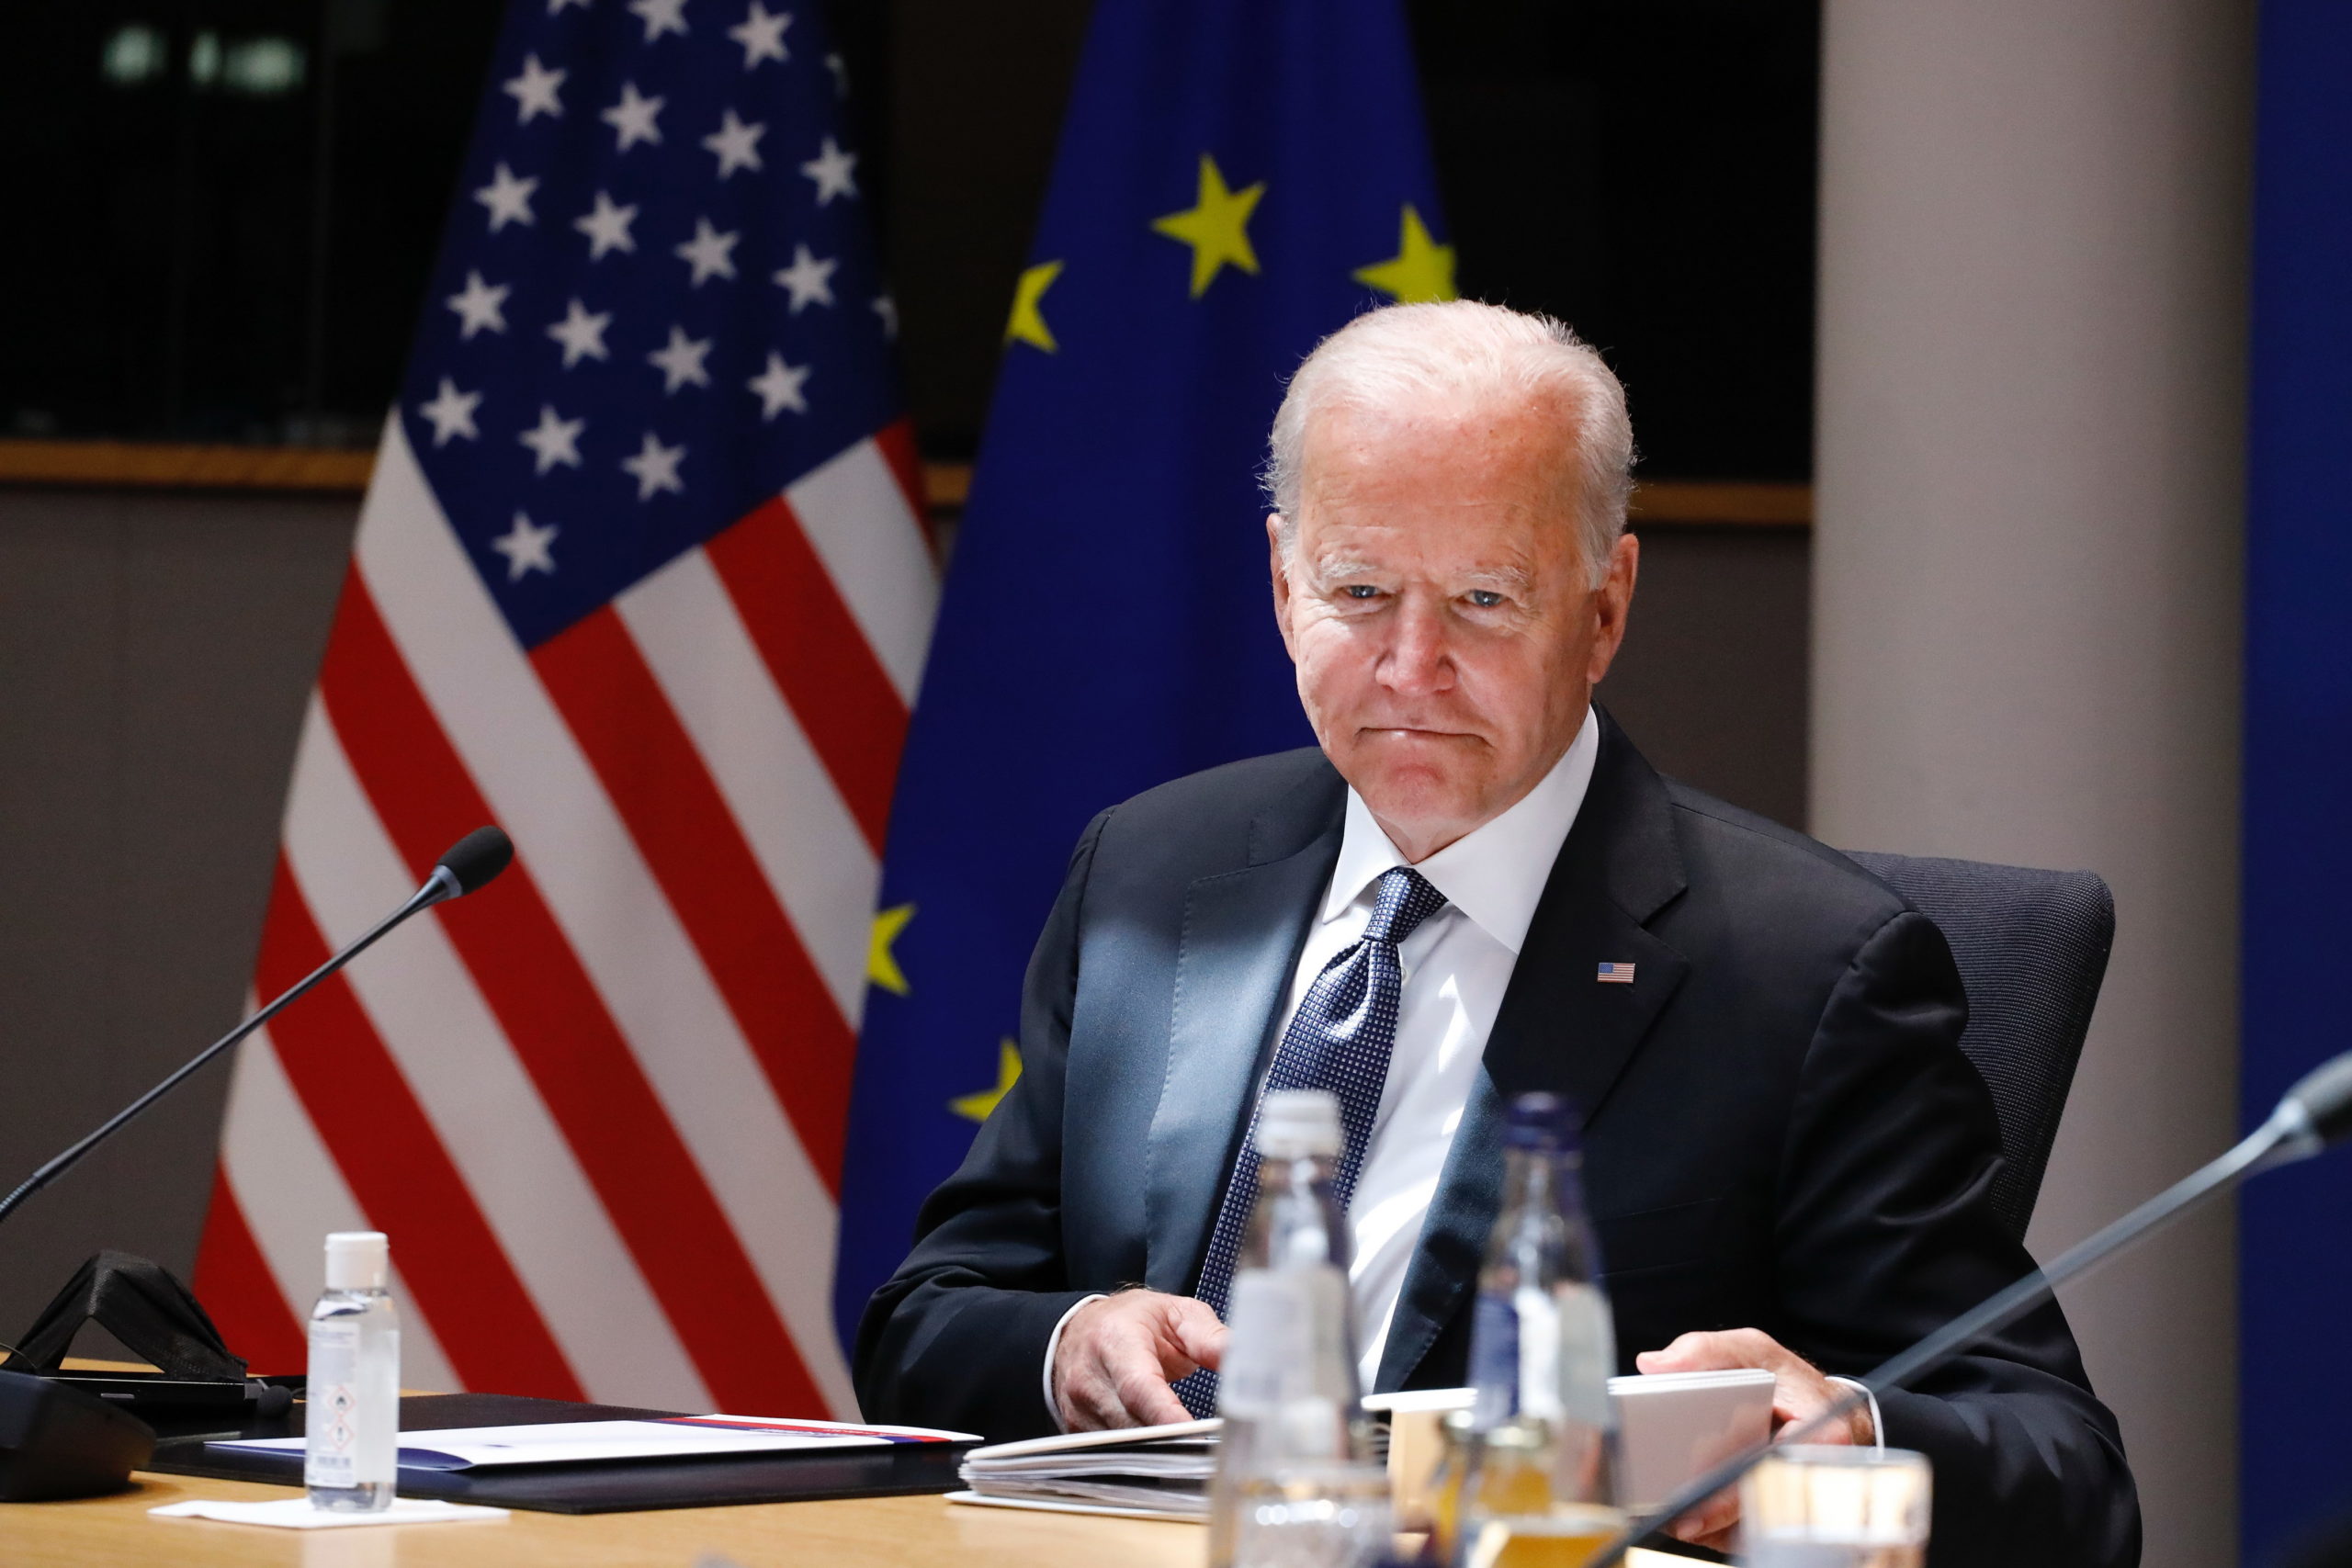 Biden istituisce il Ministero della Verità